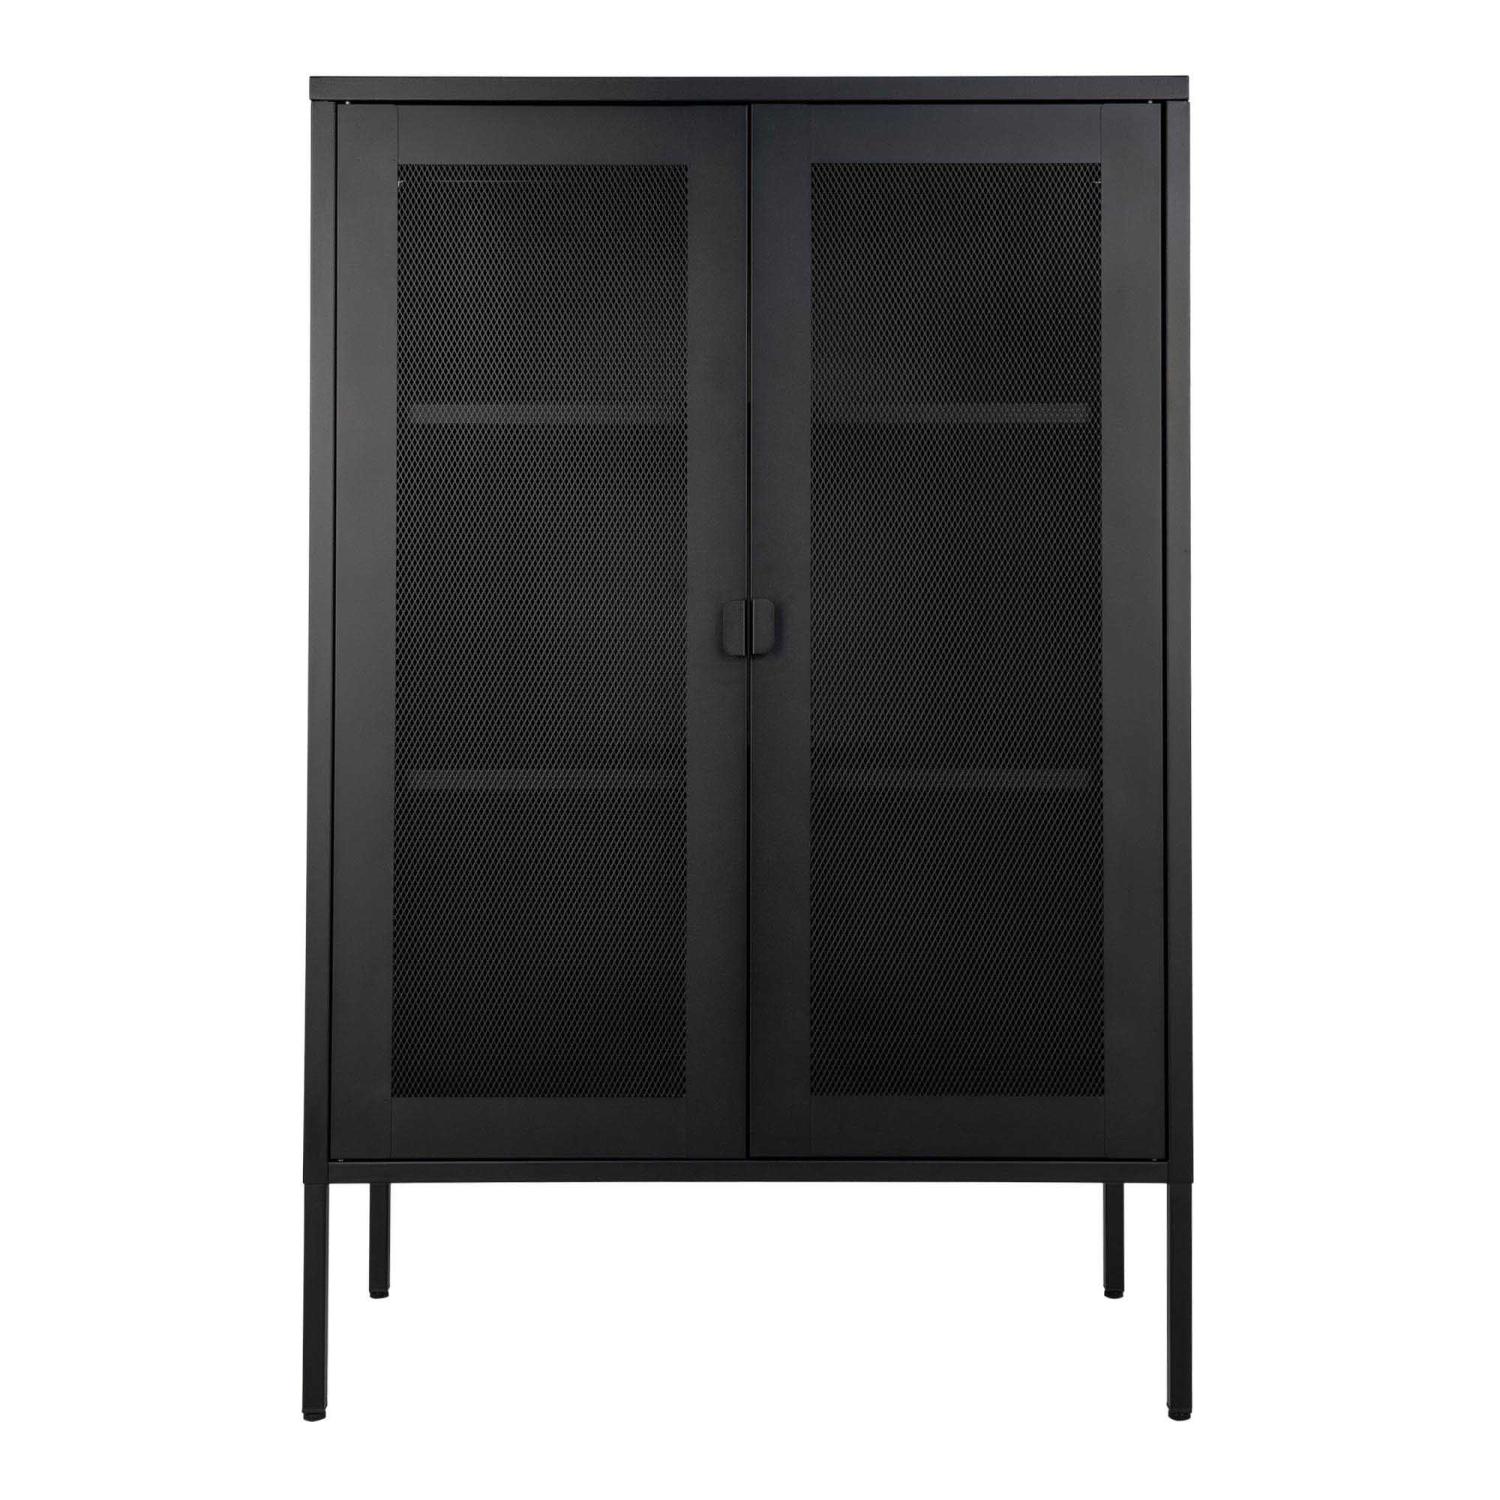 Melbourne cabinet in black with mesh door